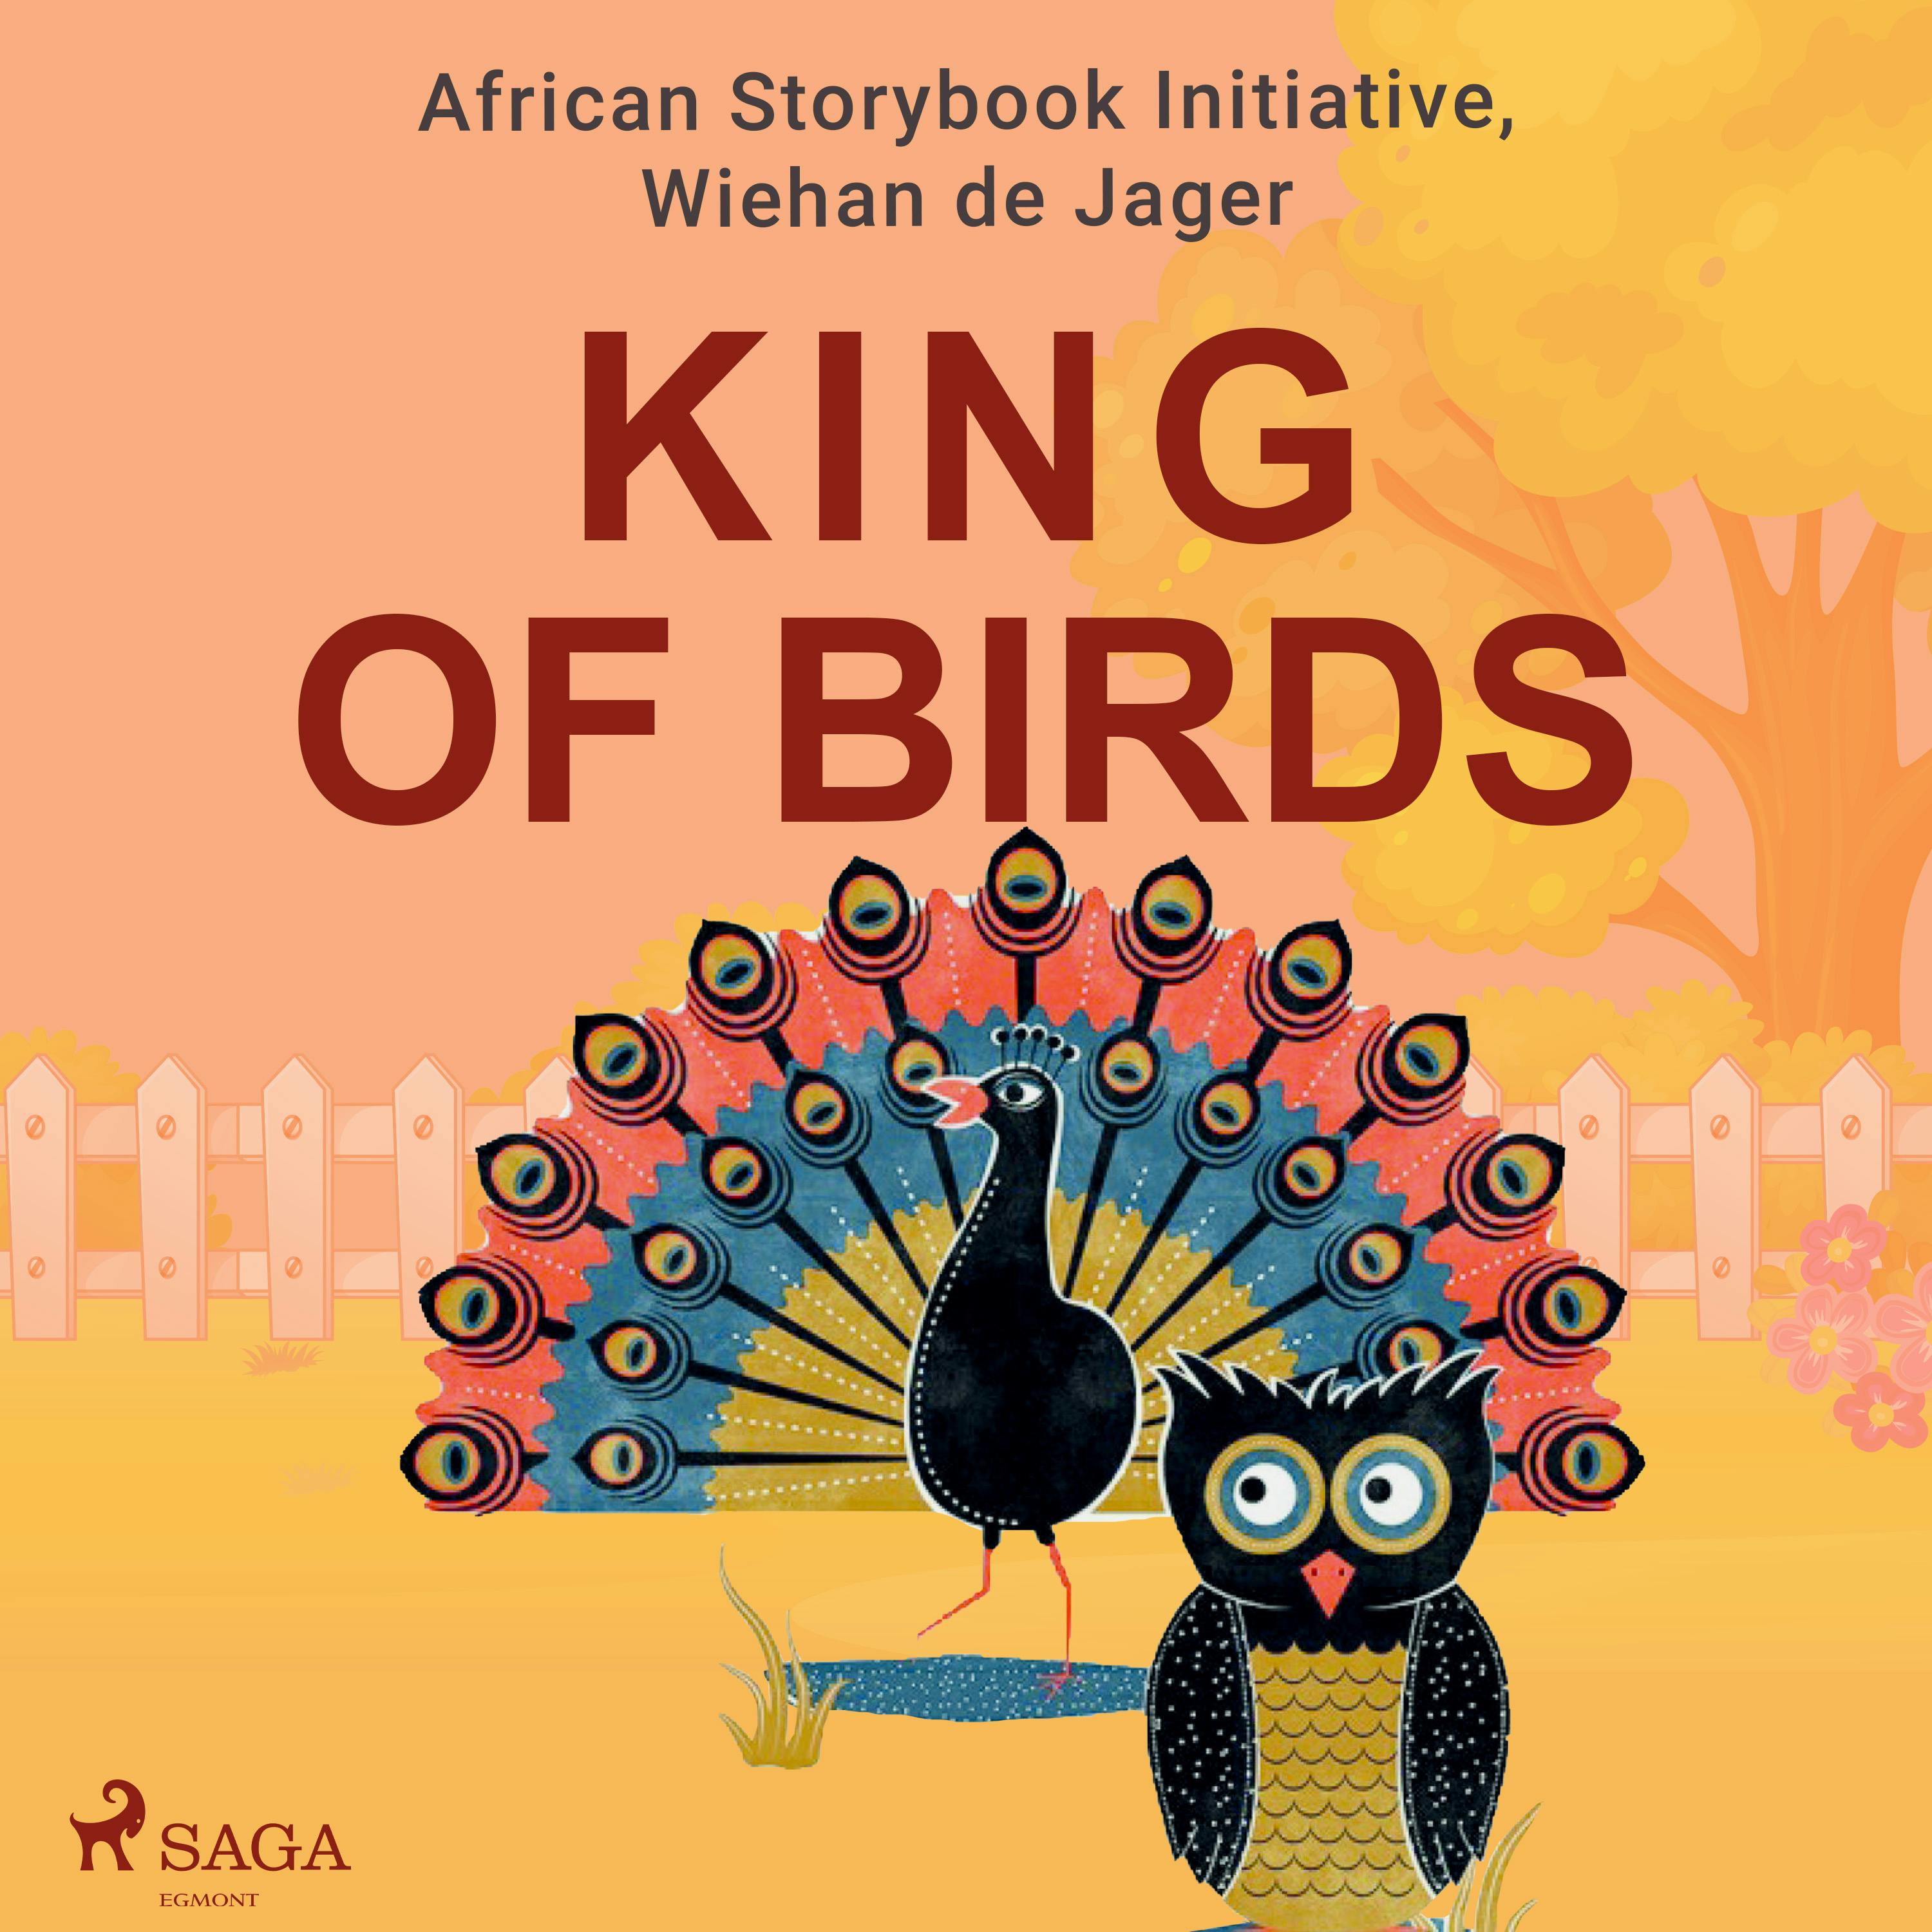 King of Birds - Wiehan de Jager, African Storybook Initiative